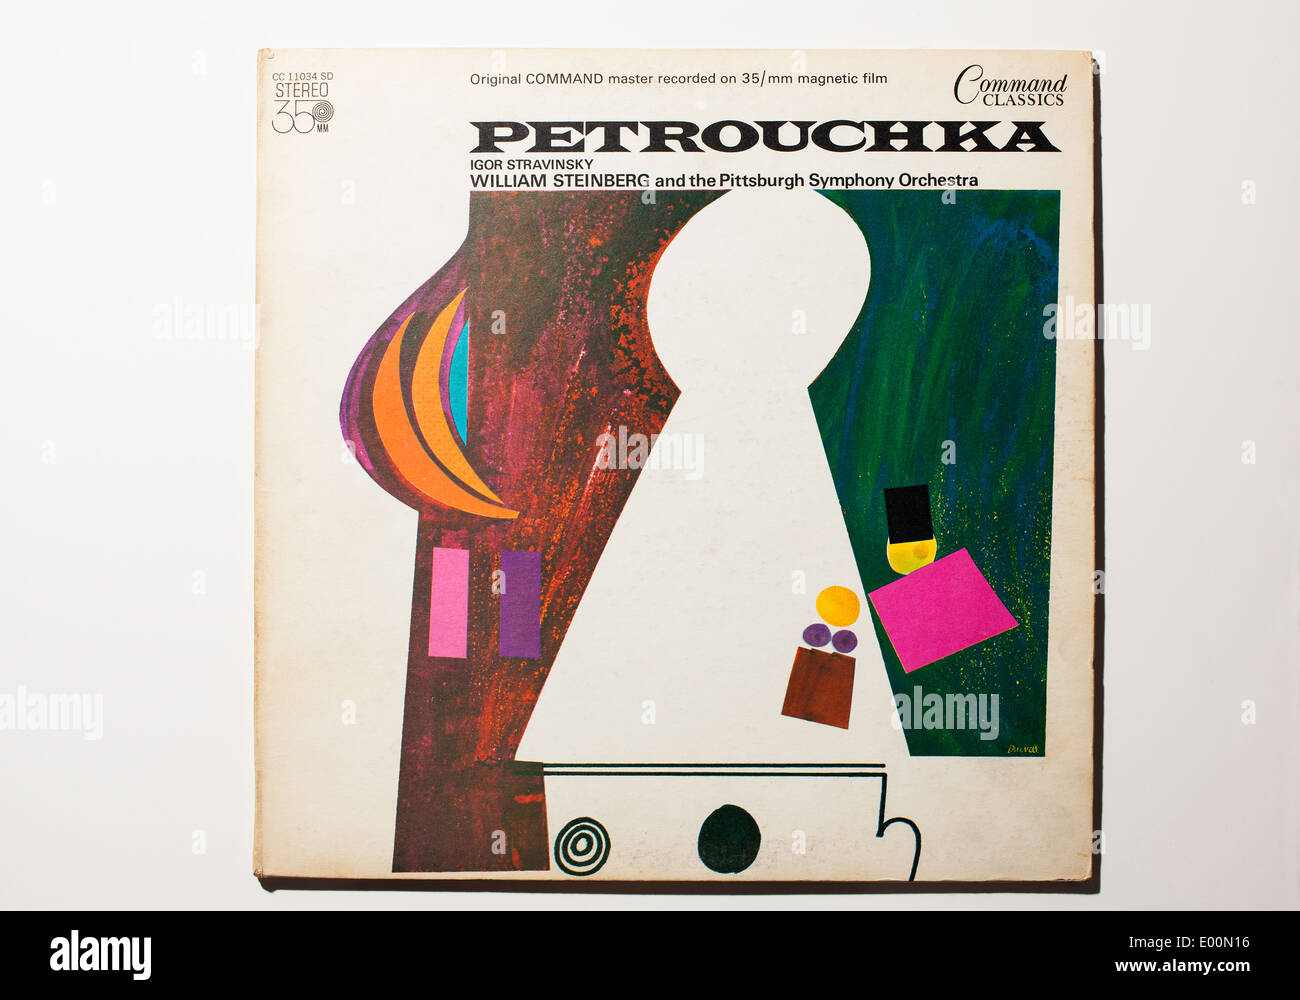 Igor Stravinsky's Petrouchka è stato registrato con William Steinberg e la Pittsburgh Symphony Orchestra, classici di comando registra Foto Stock